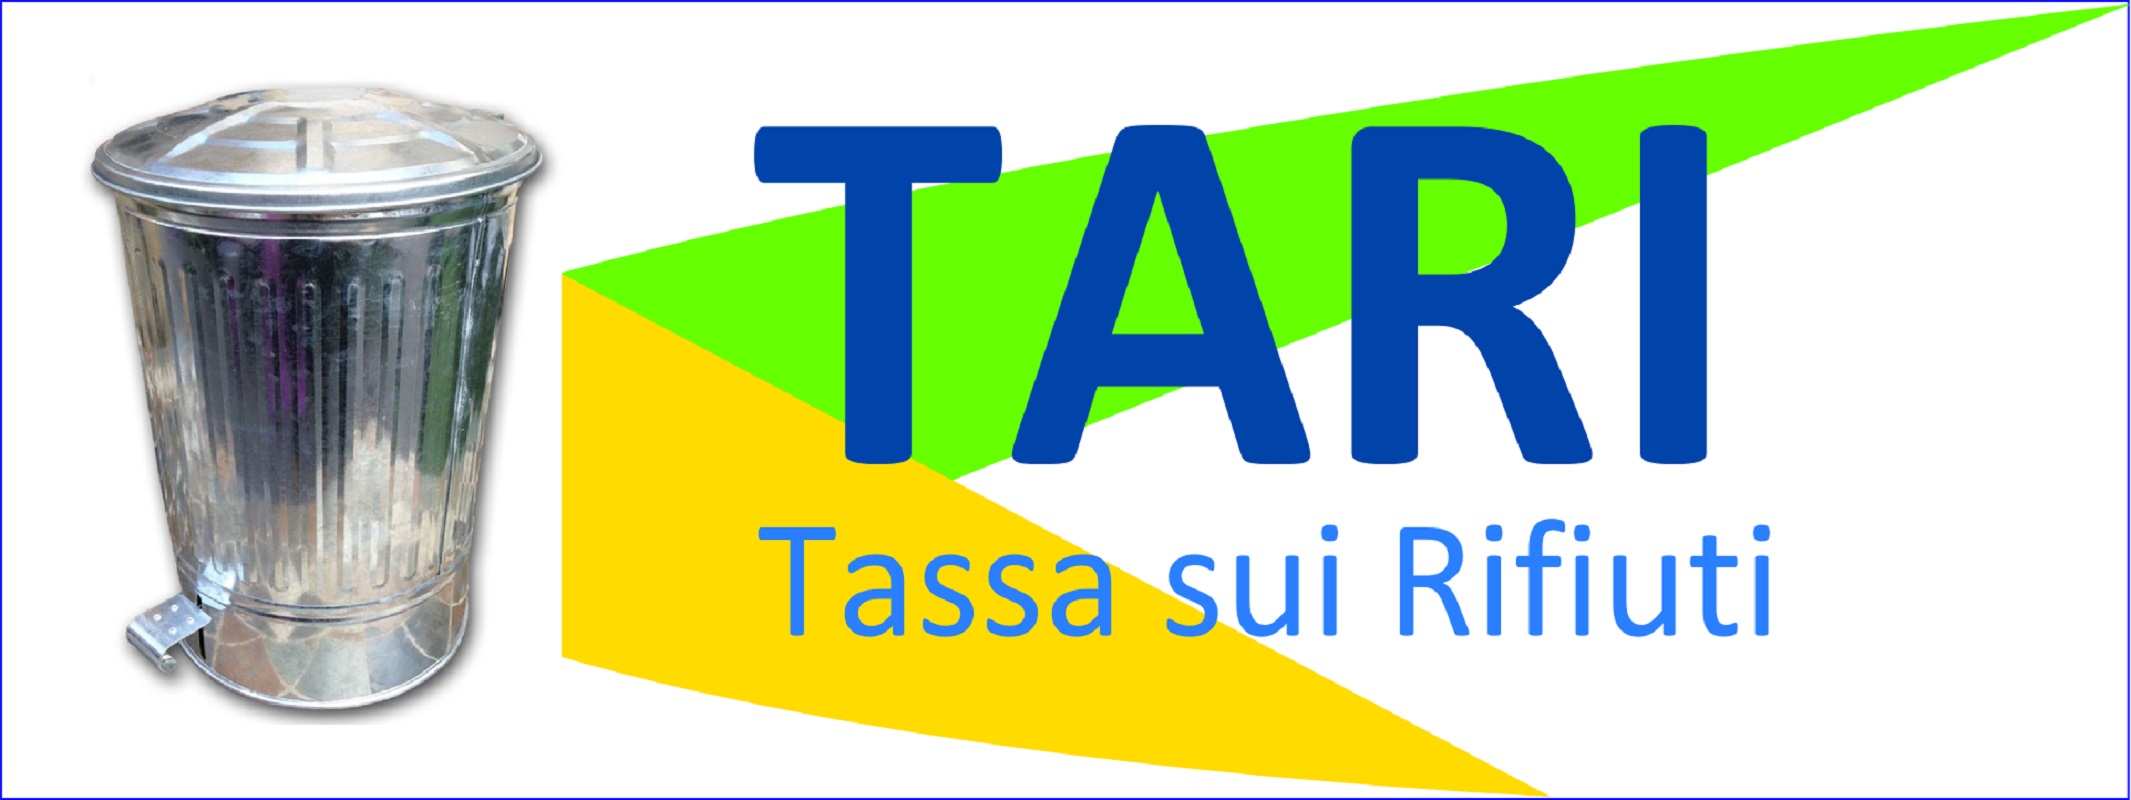 Delibere Tari da approvare entro il 30/06/2021